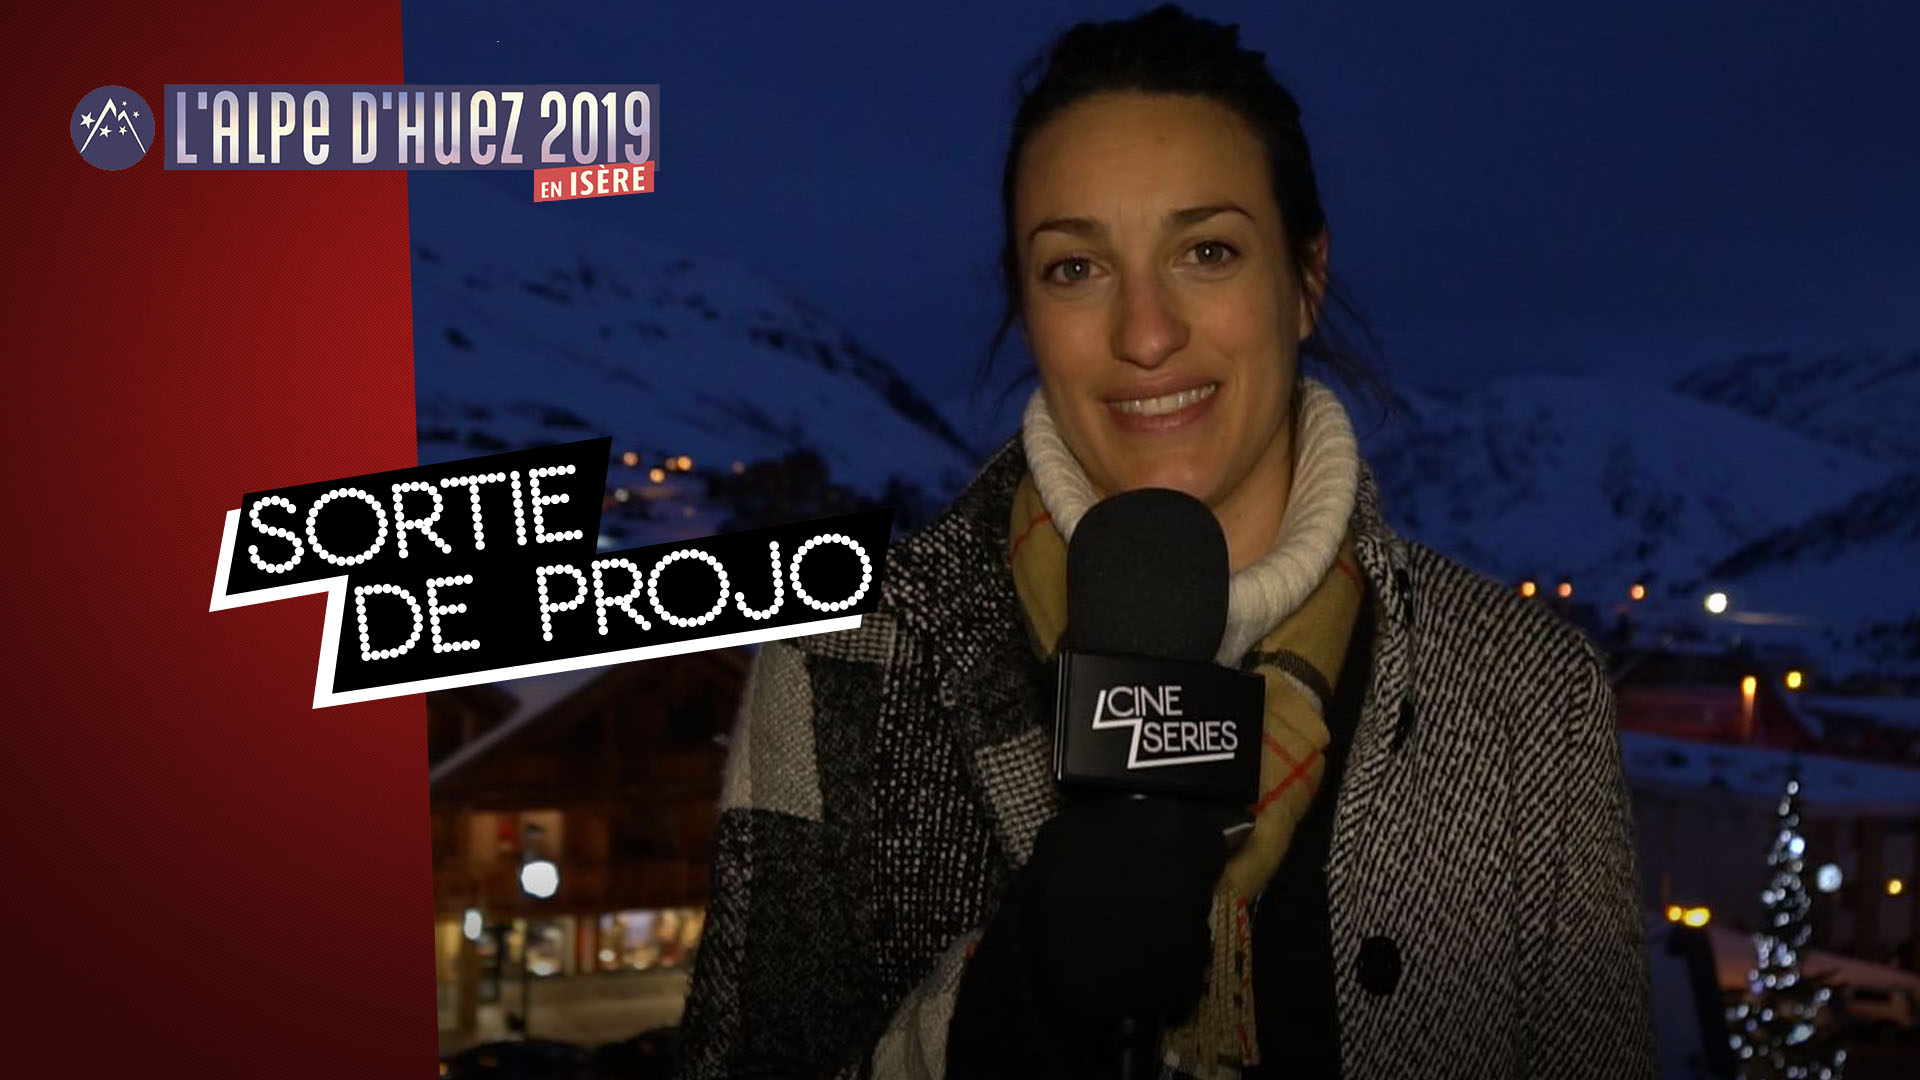 Festival de l'Alpe d'Huez 2019 : coups de coeur et palmarès